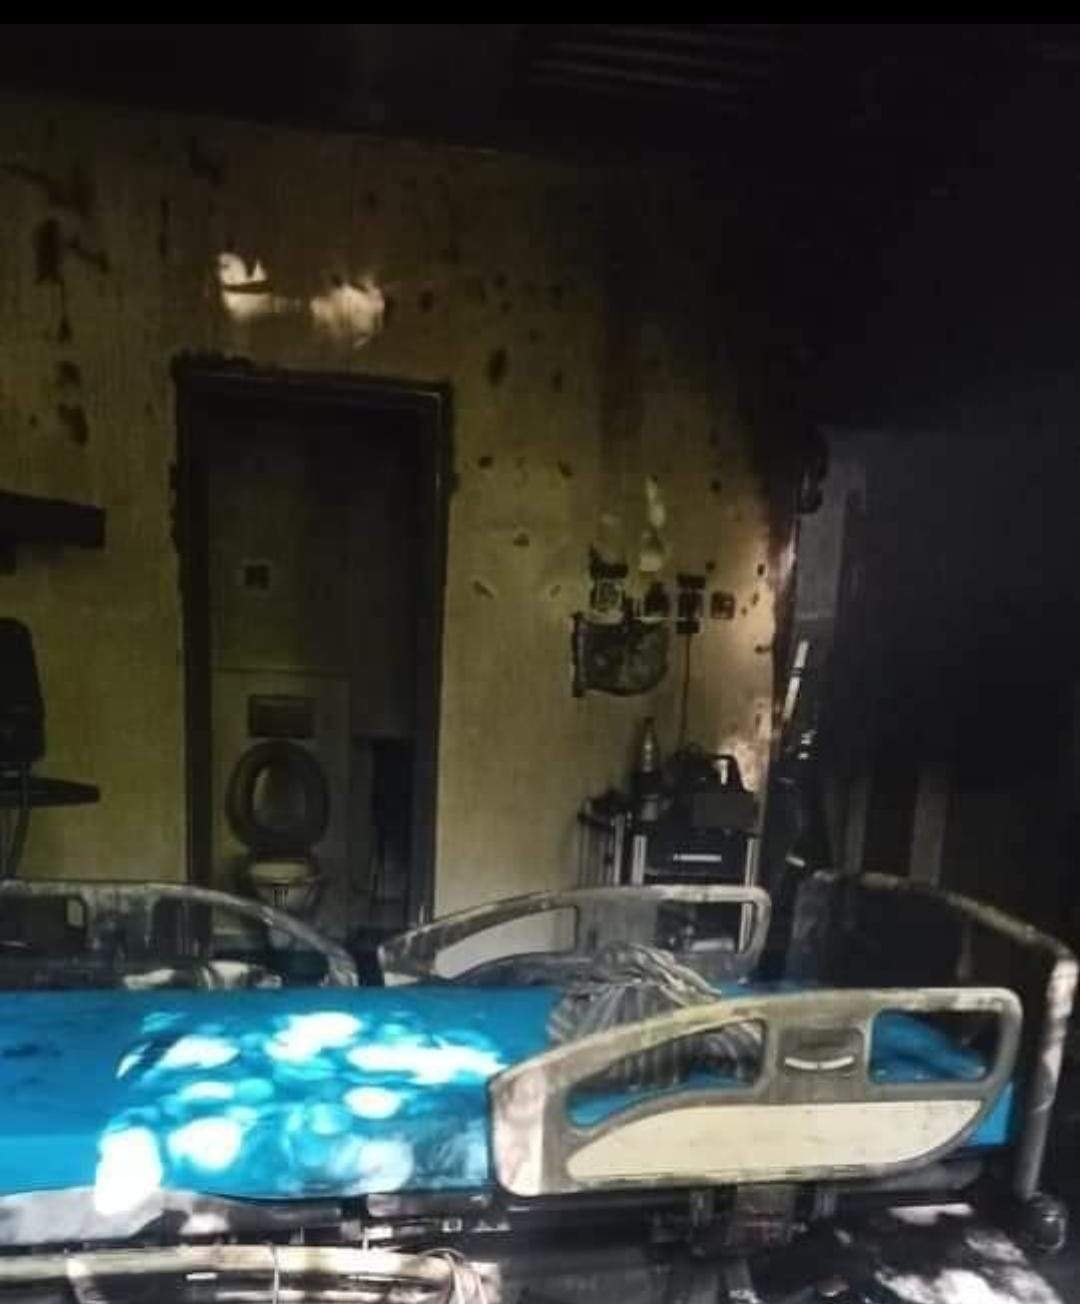 Primele imagini din interiorul secției ATI, distruse de incendiu! Managerul Spitalului de Boli Infecțioase din Constanța: "Sunt în stare de șoc, mi-e rău"